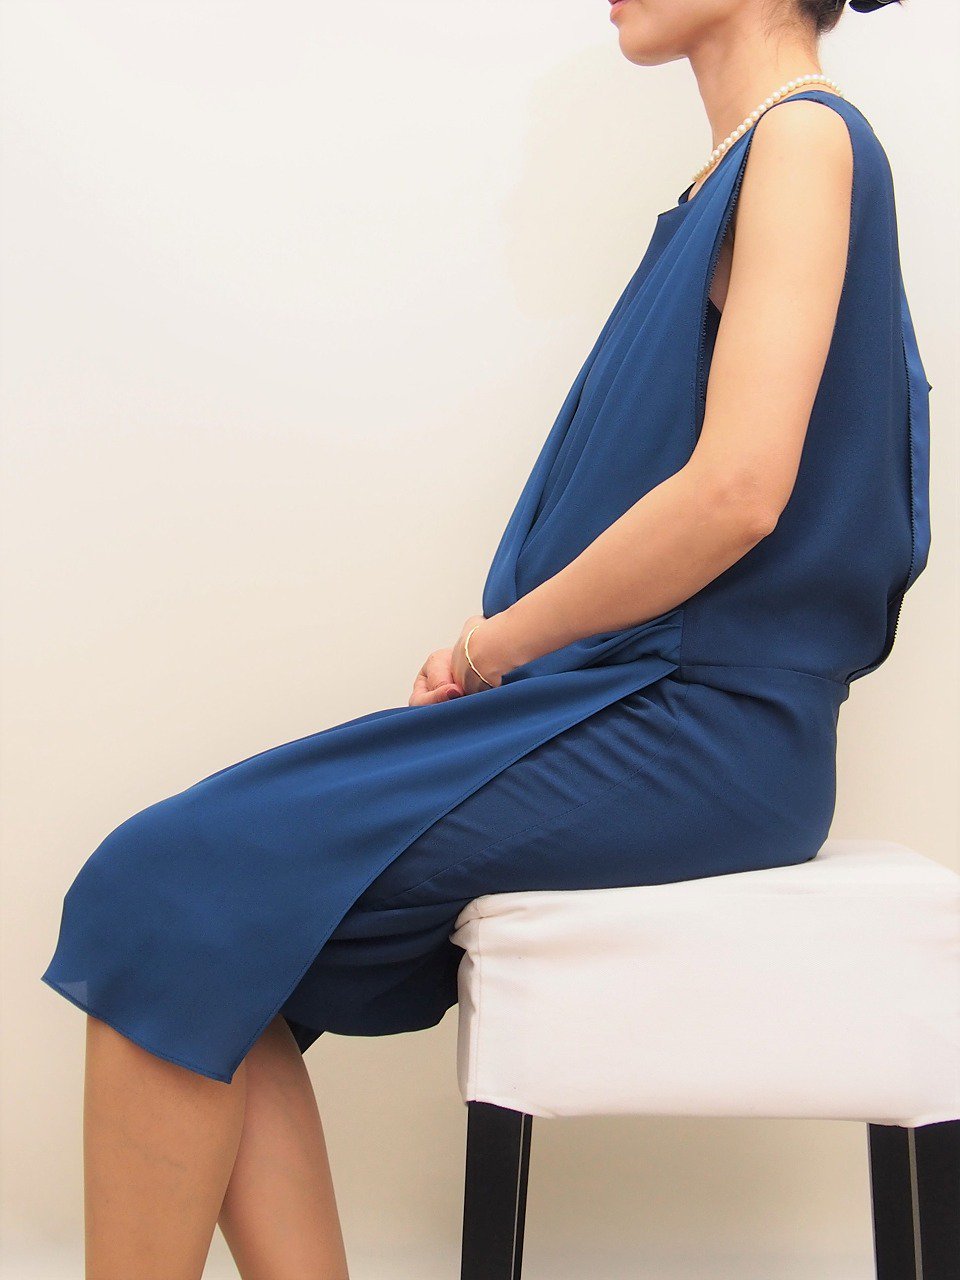 マタニティ用レンタルドレス,妊娠7ヶ月,ドレープ,座り